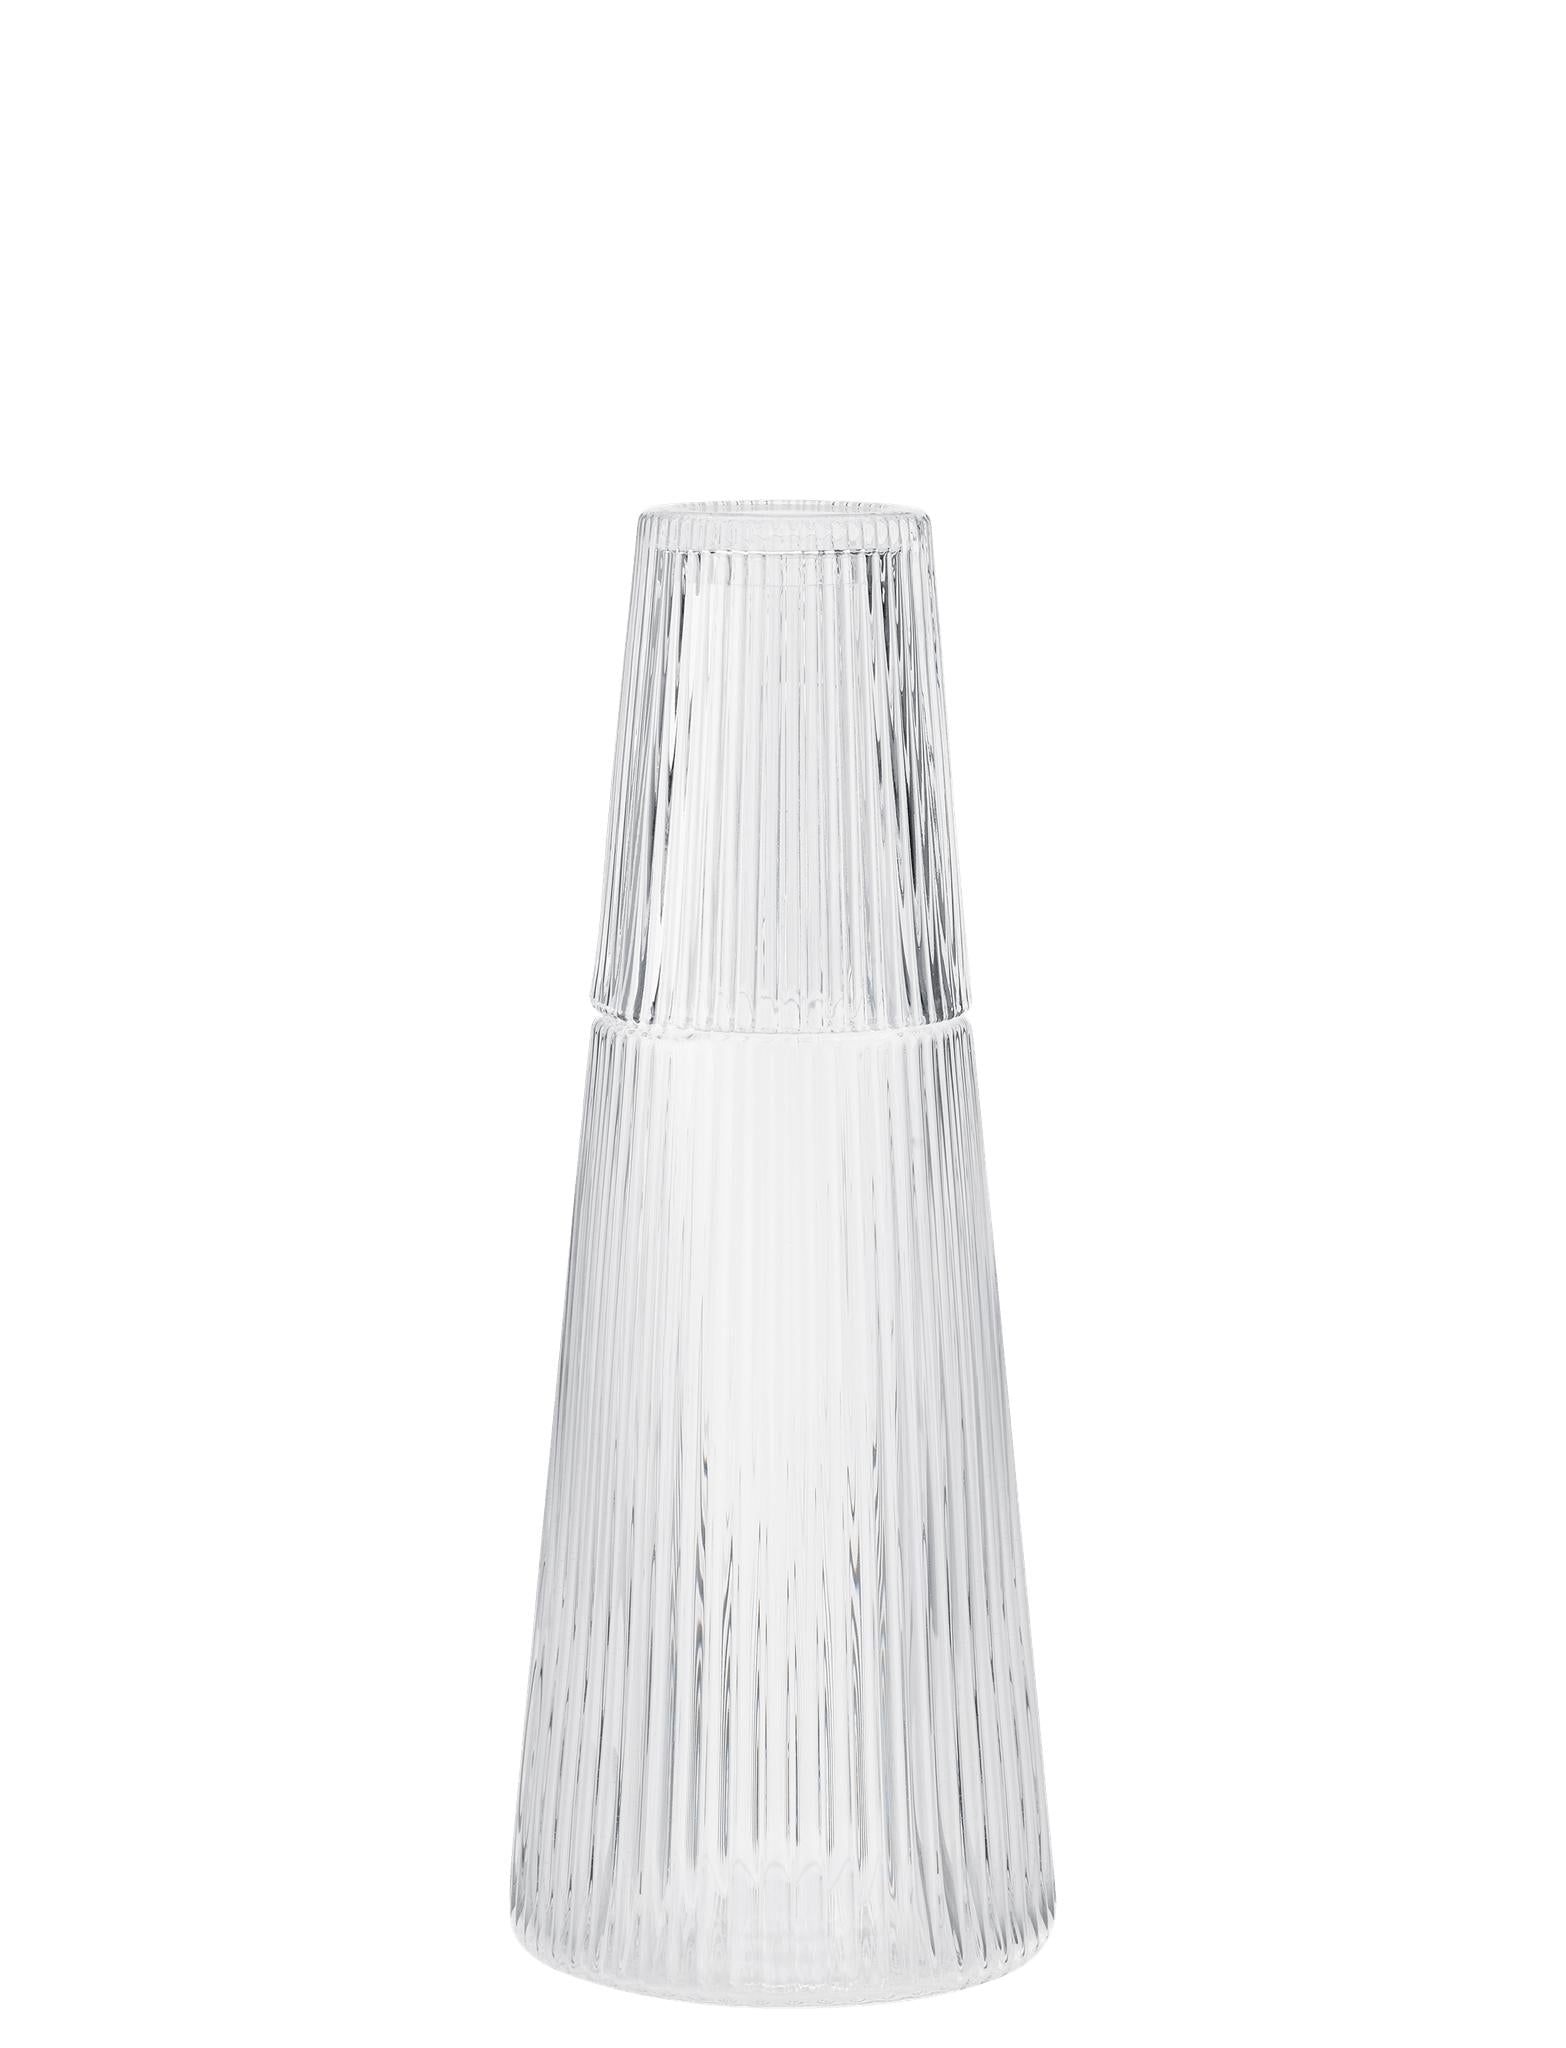 Stelton Pilastro Carafe con vidrio 1 L